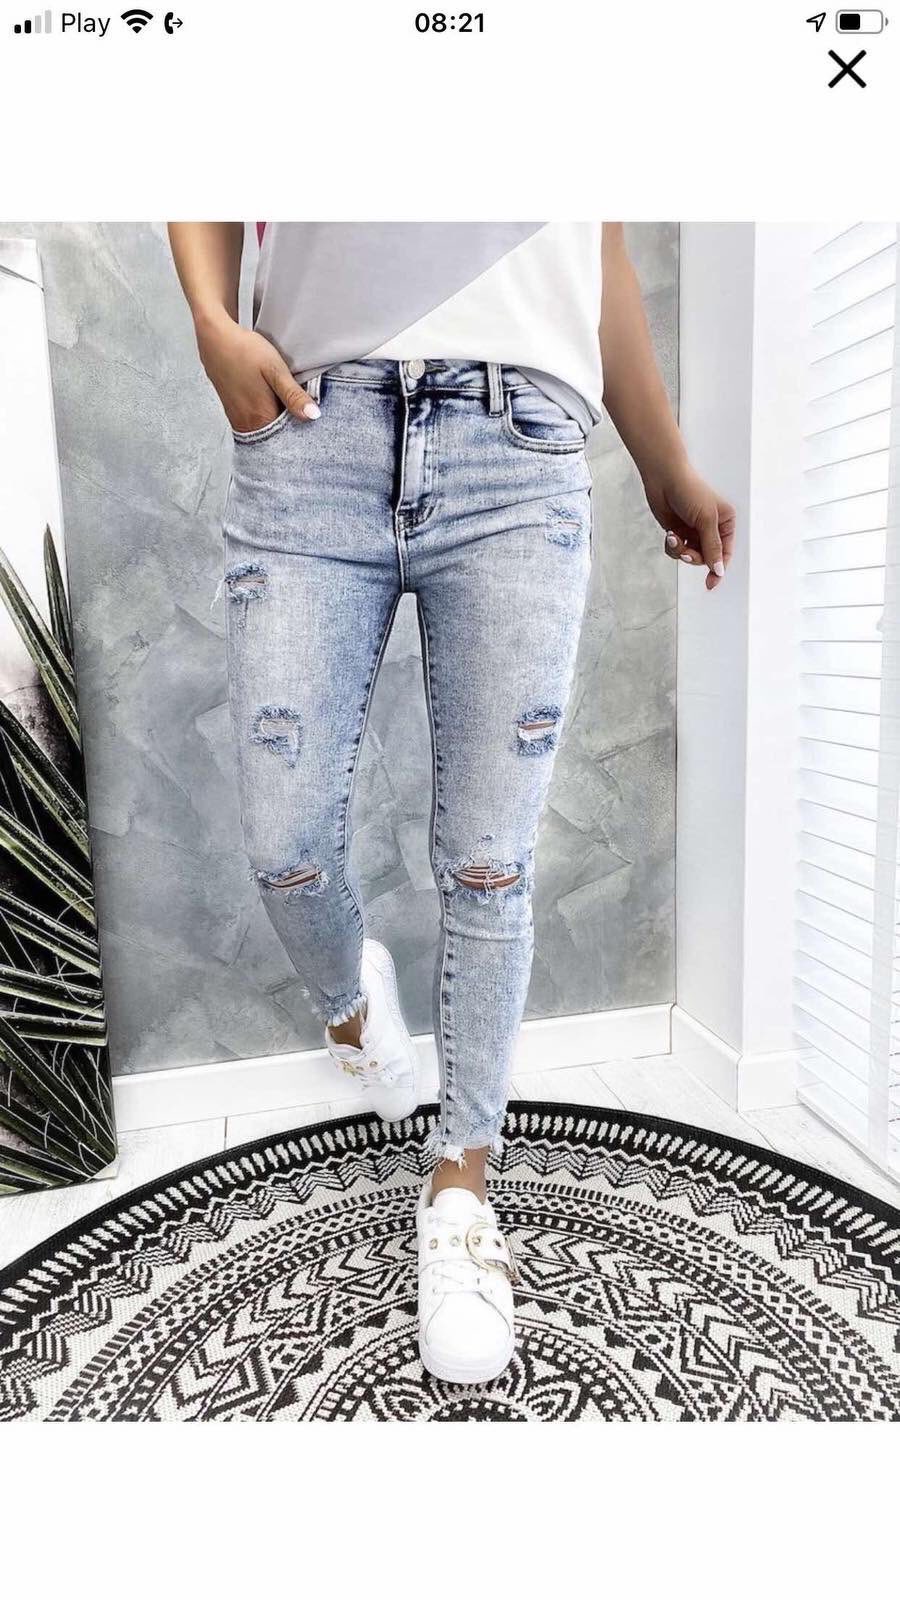 Spodnie damskie jeans Roz 34-42.  1 kolor . Paczka 12szt